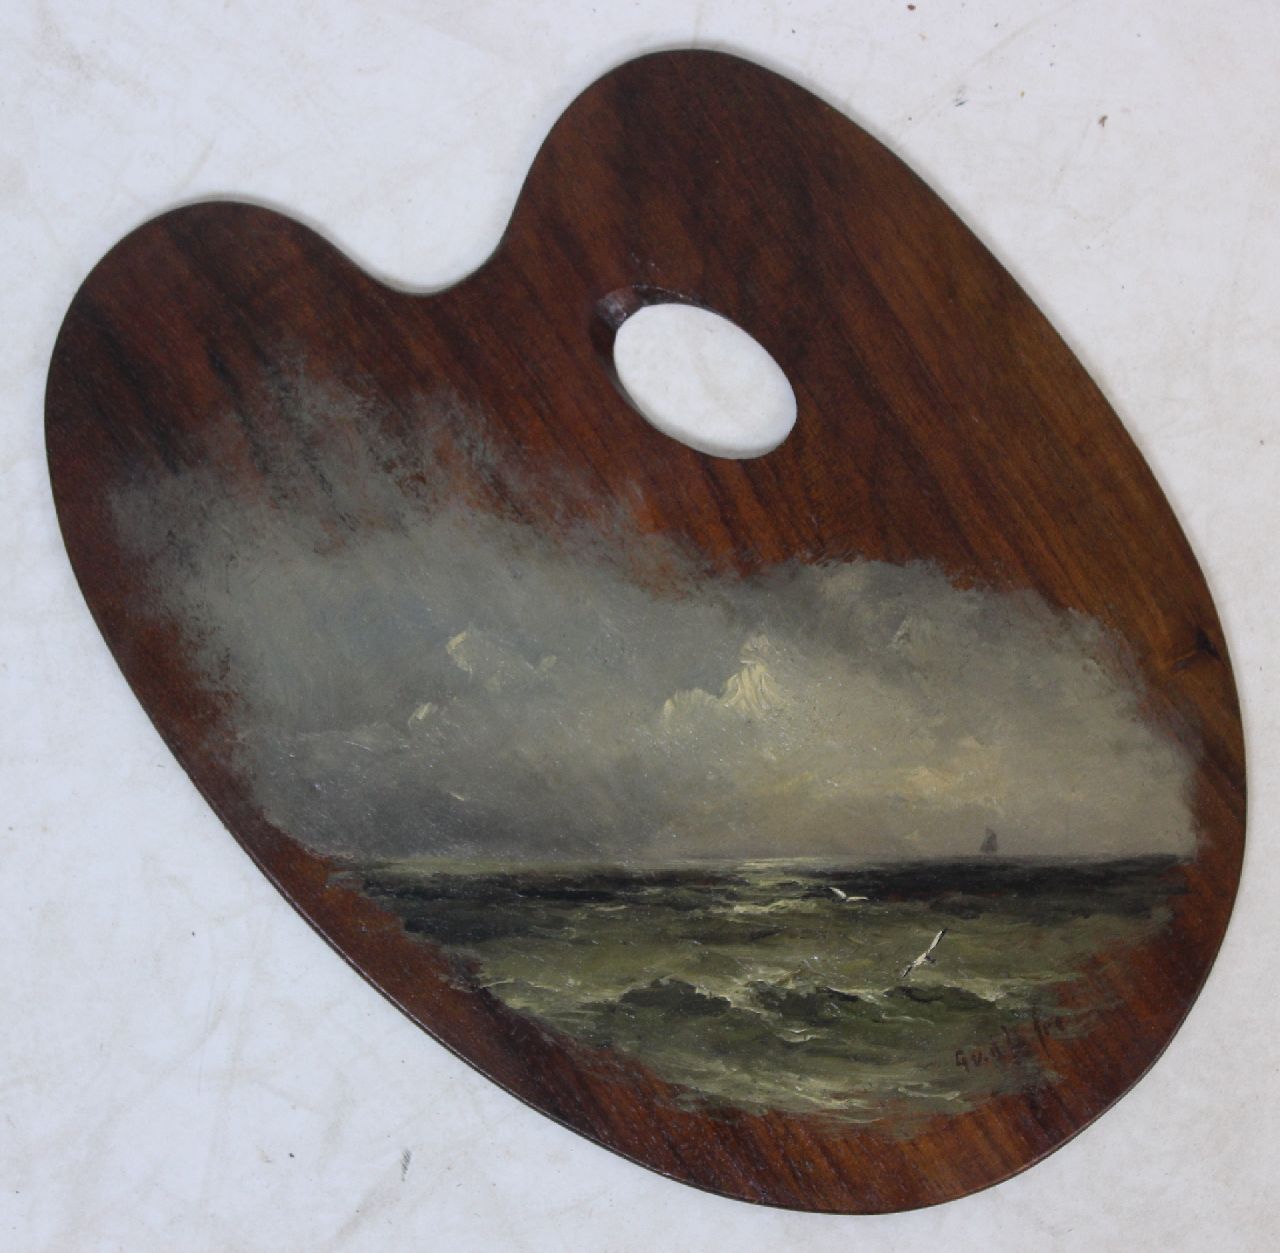 Laan G. van der | Gerard van der Laan | Schilderijen te koop aangeboden | De Noordzee, geschilderd op een schilderspalet, olieverf op paneel 28,2 x 20,8 cm, gesigneerd rechtsonder met initialen